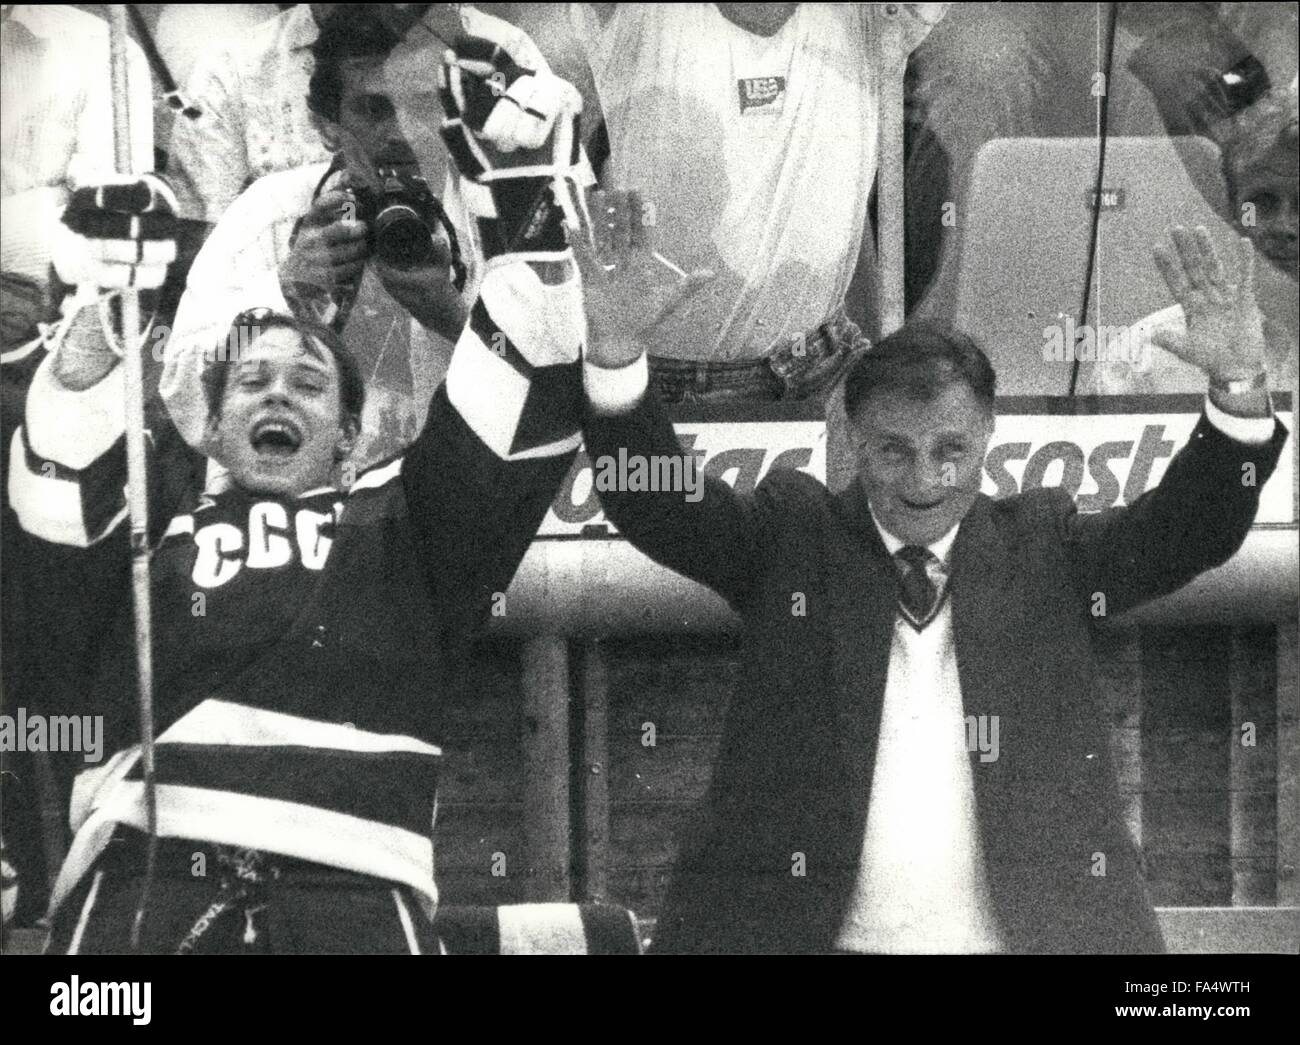 1970 - Eishockey-Weltmeisterschaften In der Schweiz: die  Eishockey-Weltmeisterschaften fanden in Bern/Schweiz vom 16. April bis 02  Mai. Sowjetische Team ist die Eishockey-Weltmeister. Das Foto zeigt.  Sowjetischen Trainer Viktor Tikhonov (rechts ...